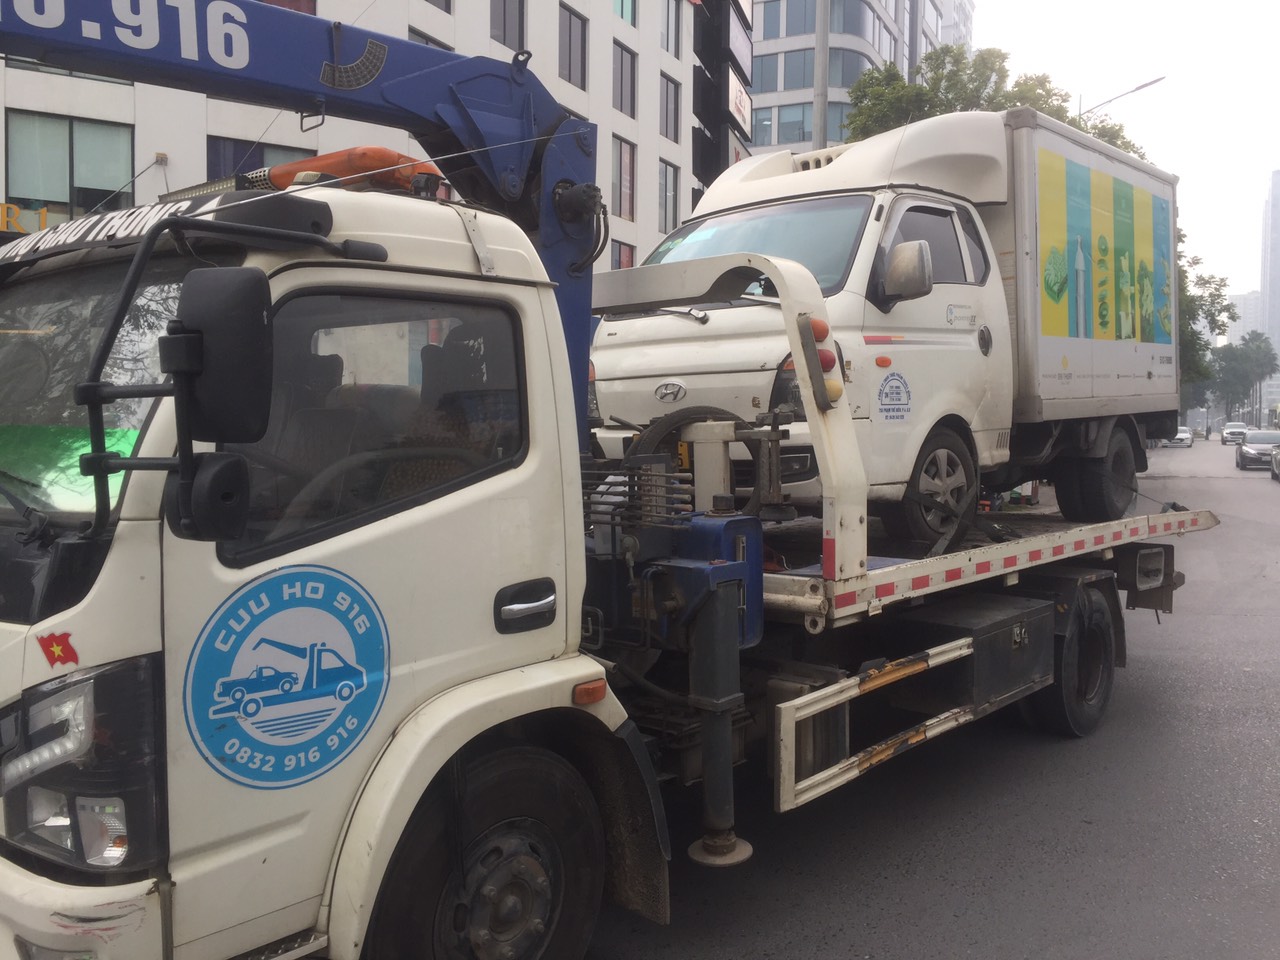 Cứu hộ xe quận Phú Nhuận - cứu hộ giao thông TPHCM  - 0832.916.916